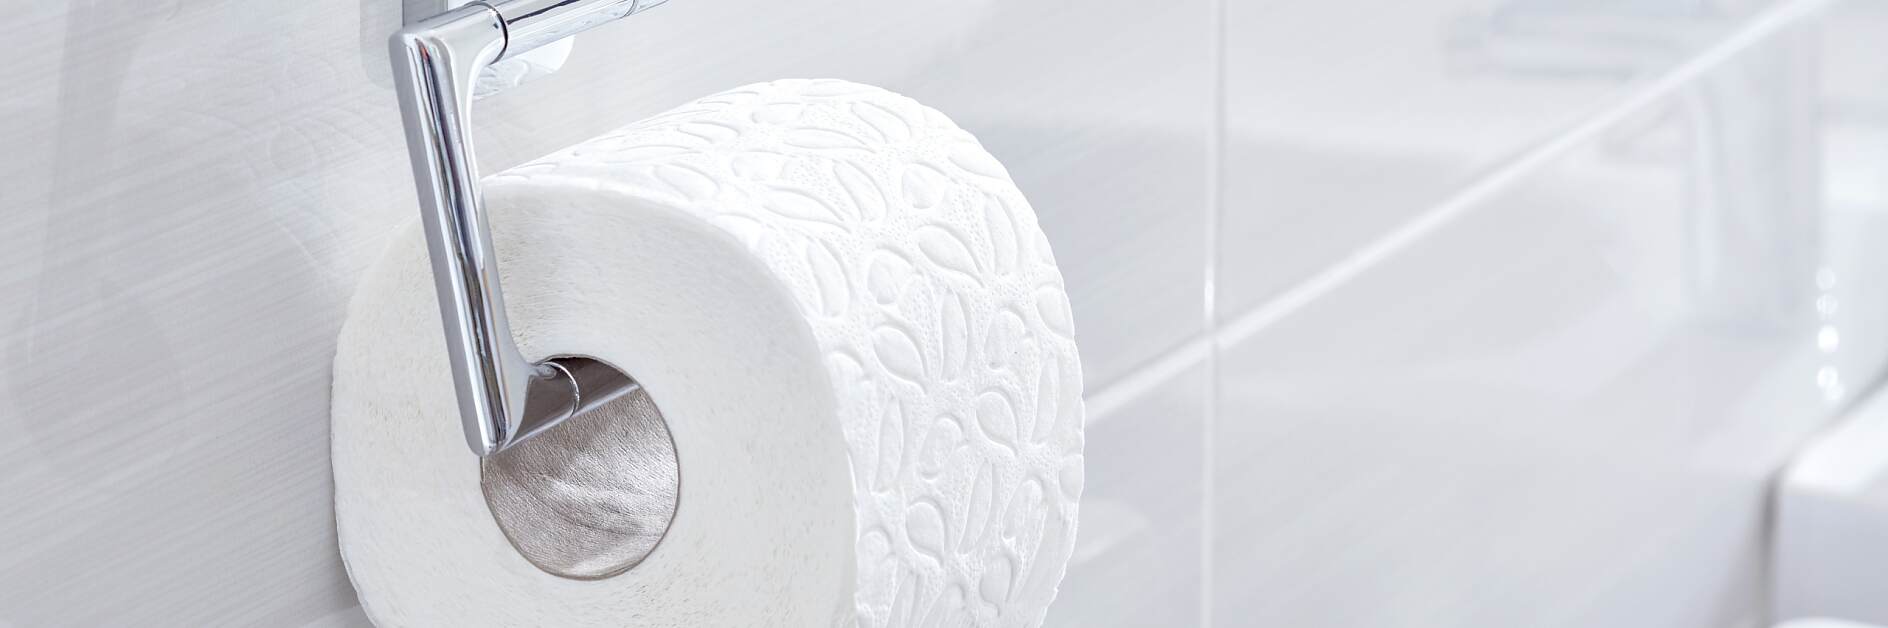 Posizionare il porta rotolo carta igienica: guida alle misure standard